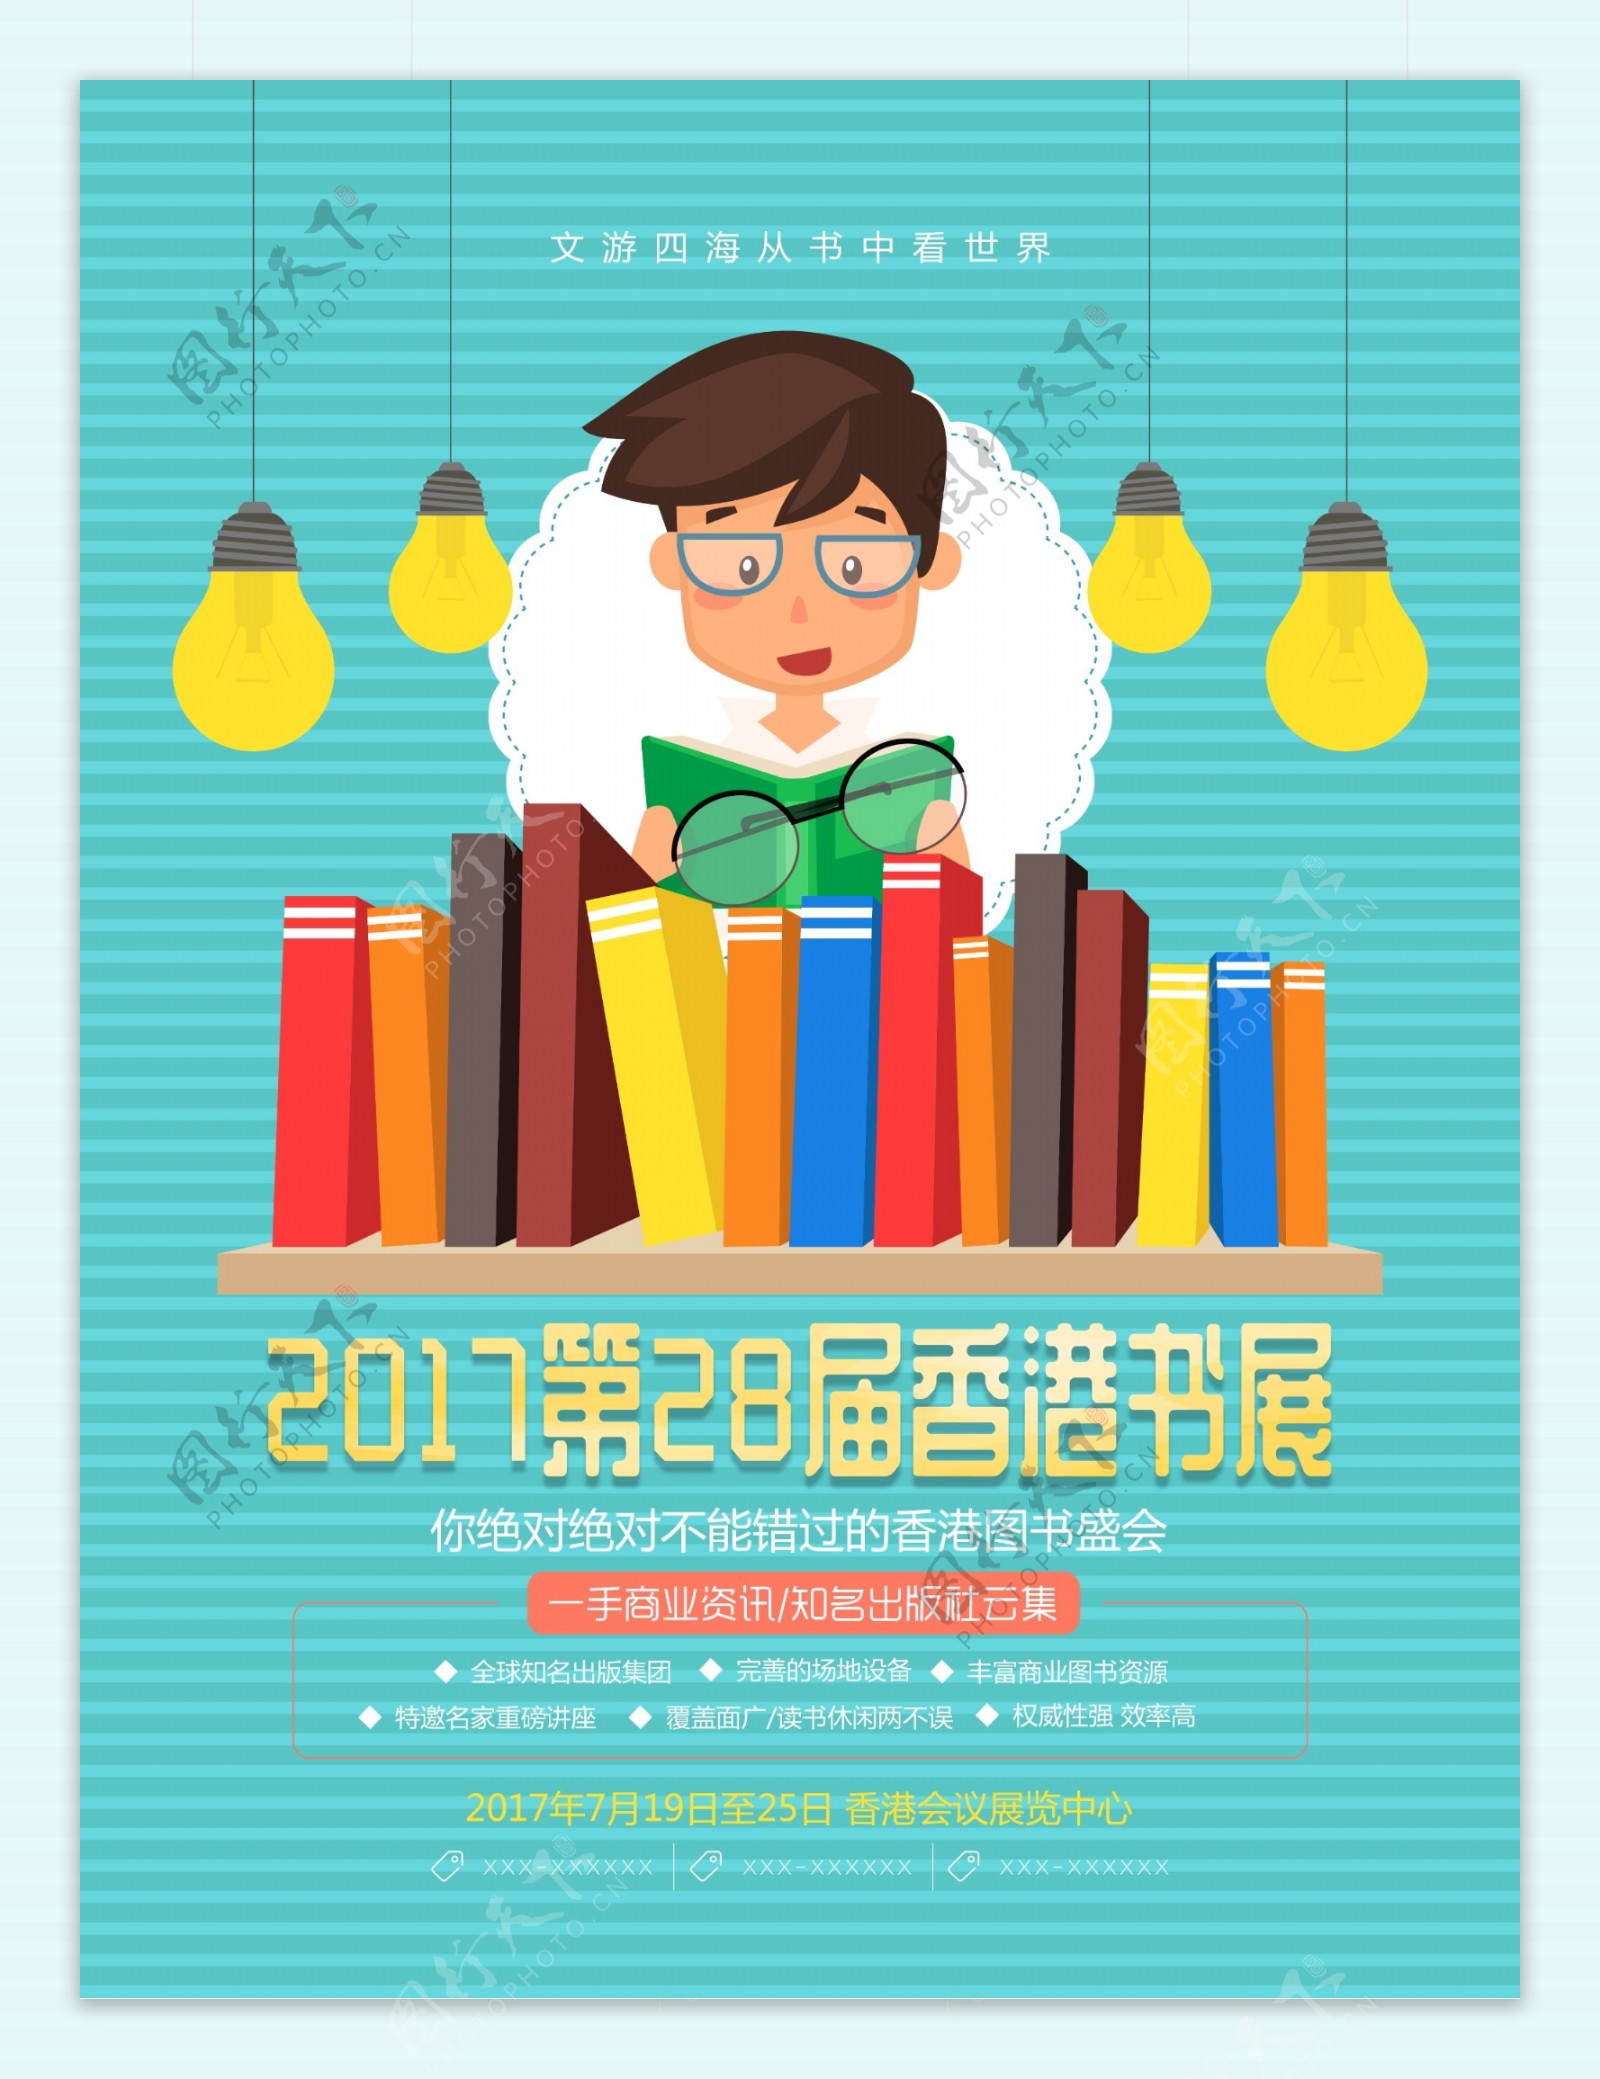 清新少儿2017香港书展少儿图书展区海报